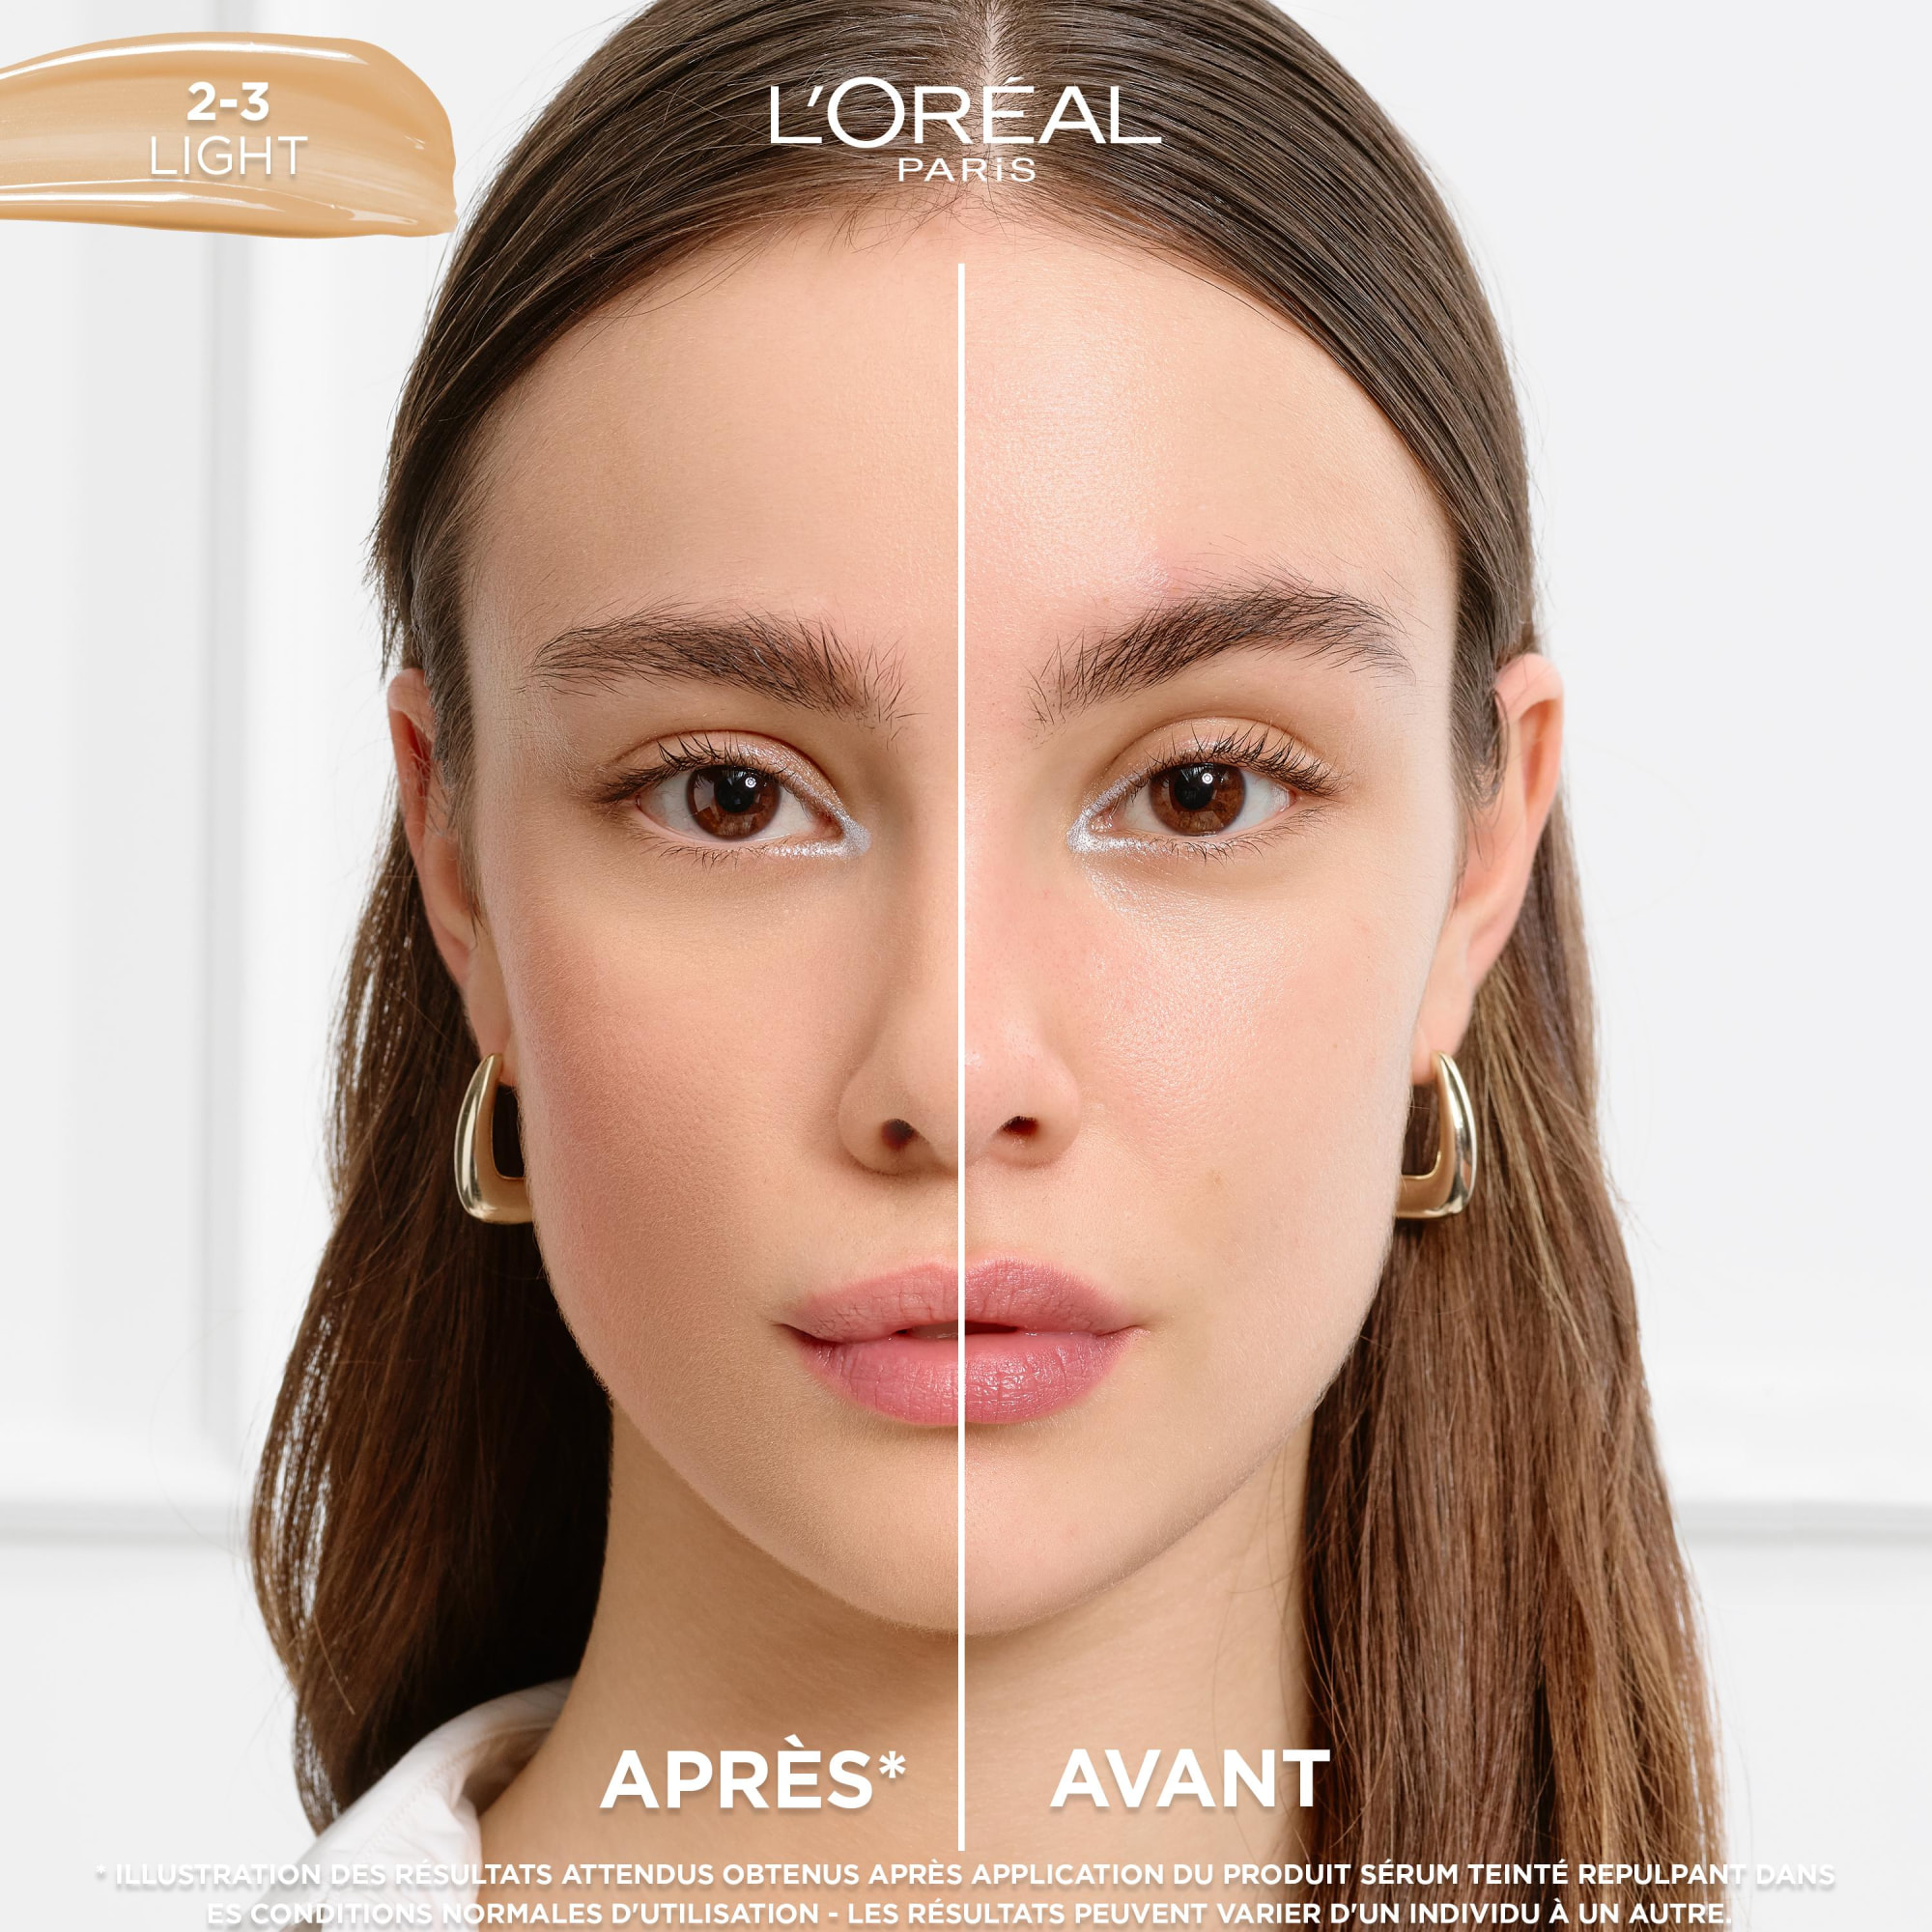 L'Oréal Paris Accord Parfait Sérum teinté repulpant 2-3 Light